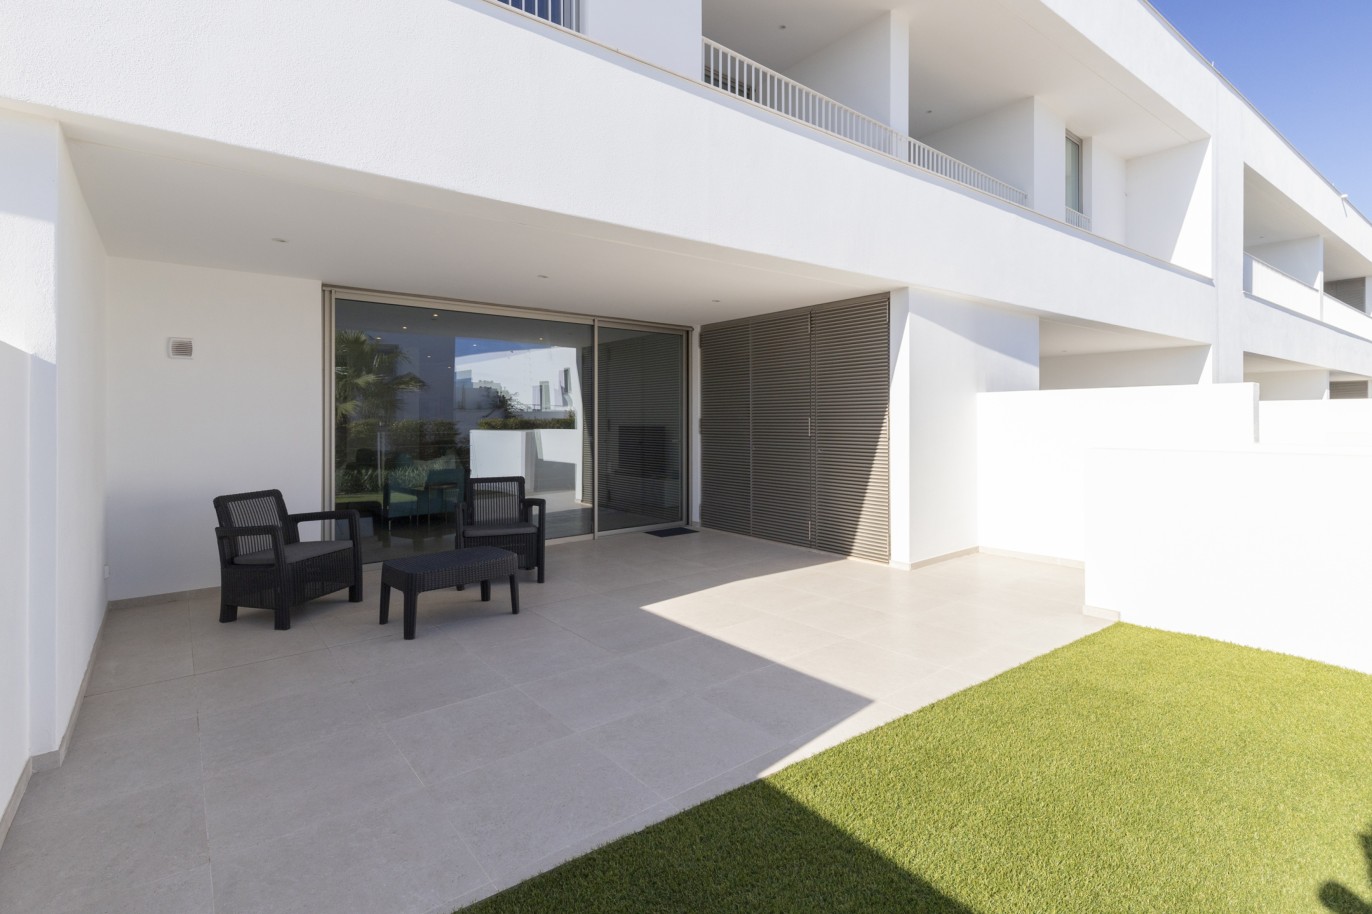 Villa de 3 dormitorios en condominio privado, en venta, en Lagos, Algarve_217639